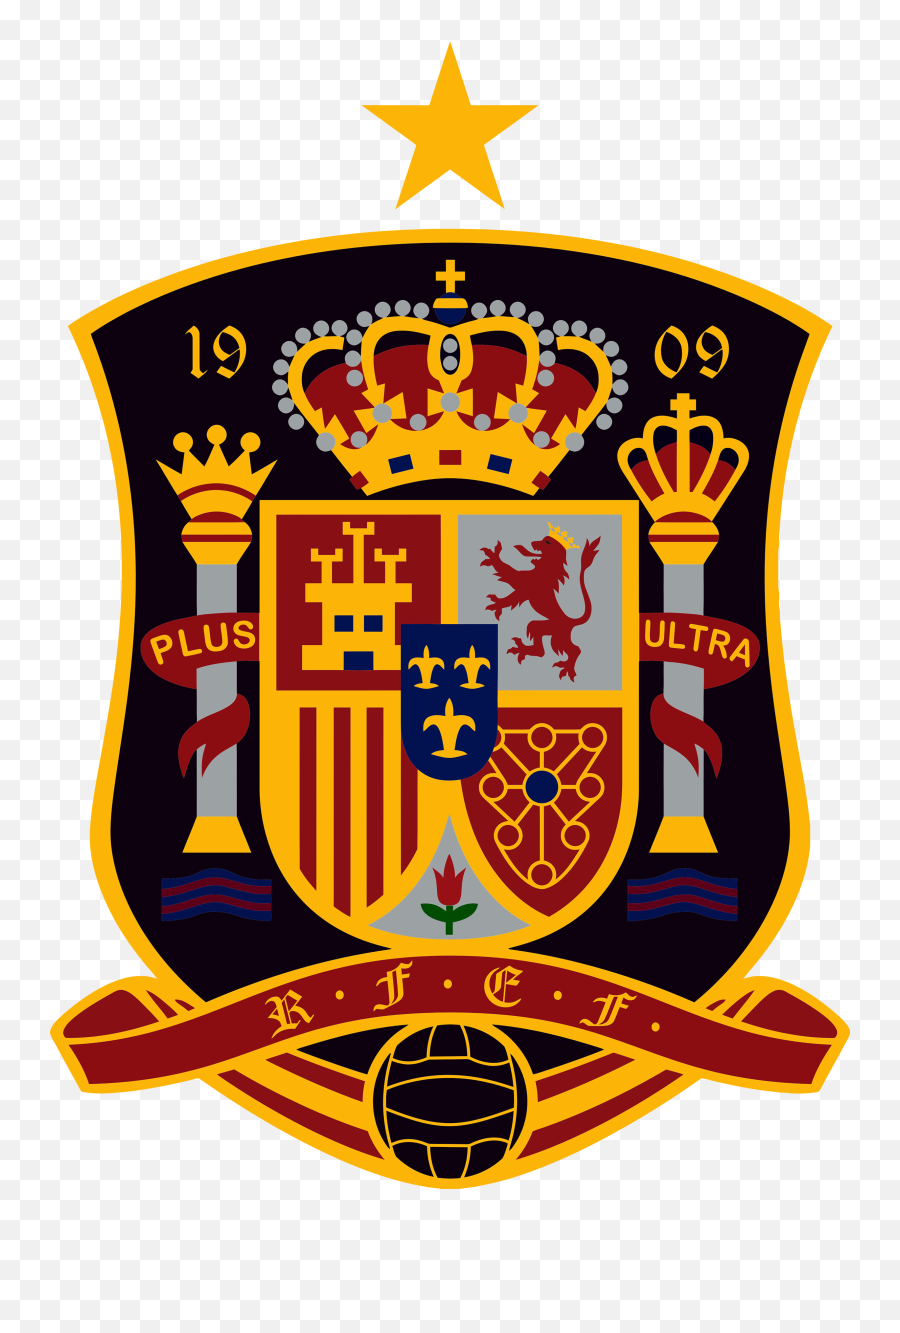 Spain National Football Team - Spain National Football Team Logo Emoji,Football Team Logo